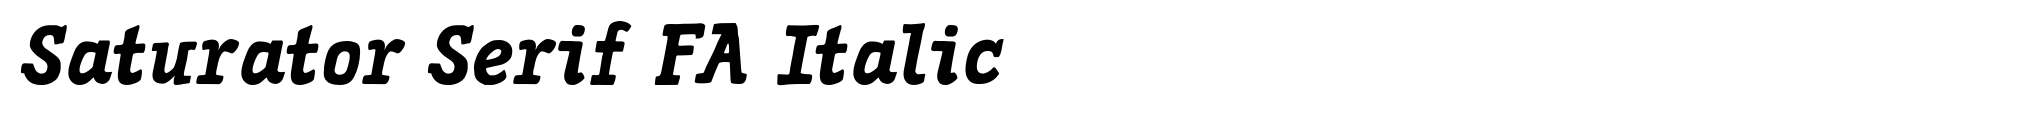 Saturator Serif FA Italic image